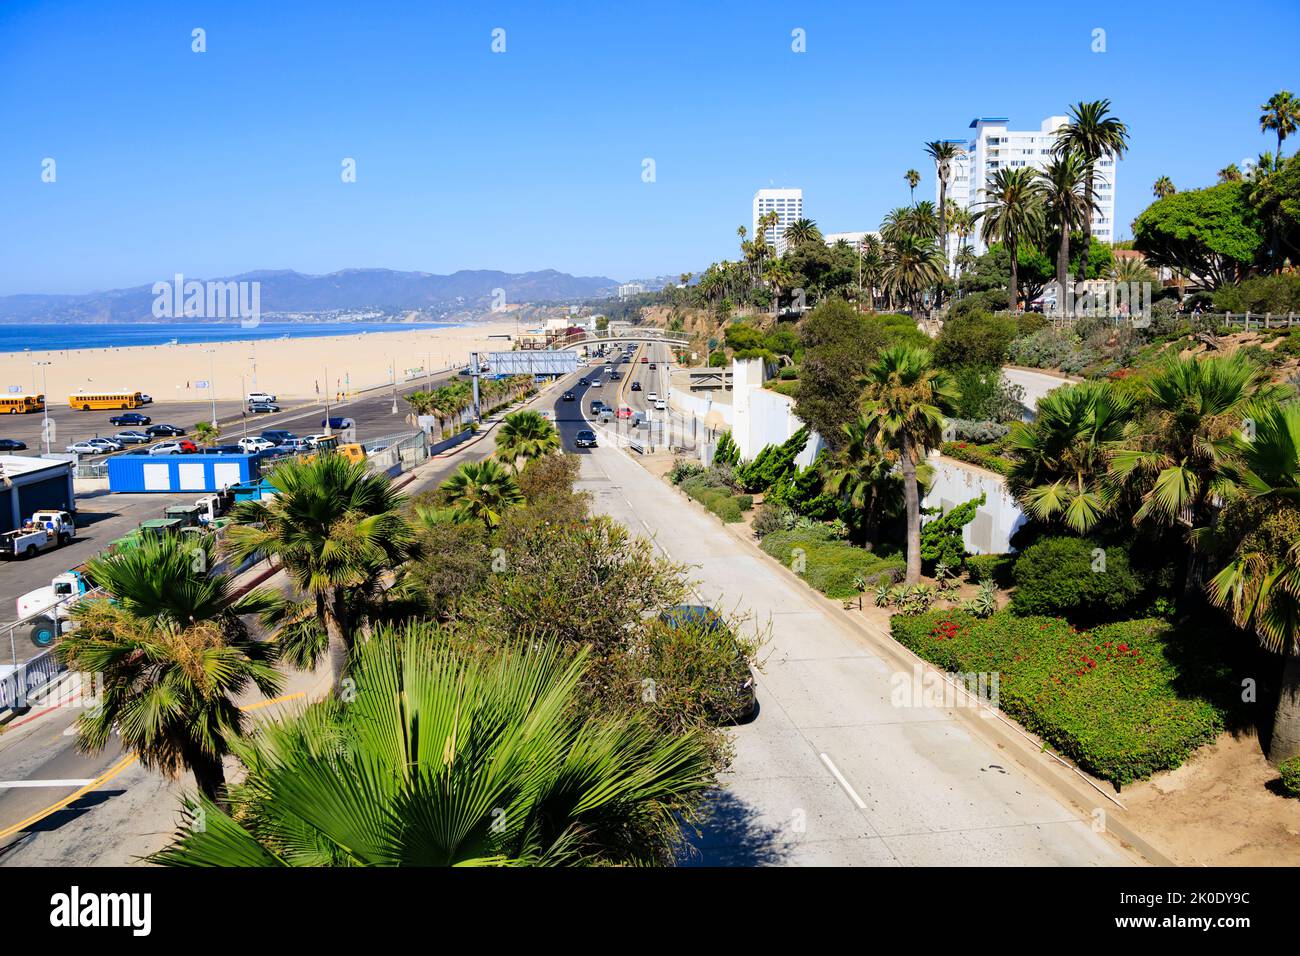 Autoroute de la côte du Pacifique à OceanAvenue, sortie du centre-ville de Santa Monica. Santa Monica, Californie, États-Unis d'amérique. ÉTATS-UNIS. Octobre 2019 Banque D'Images